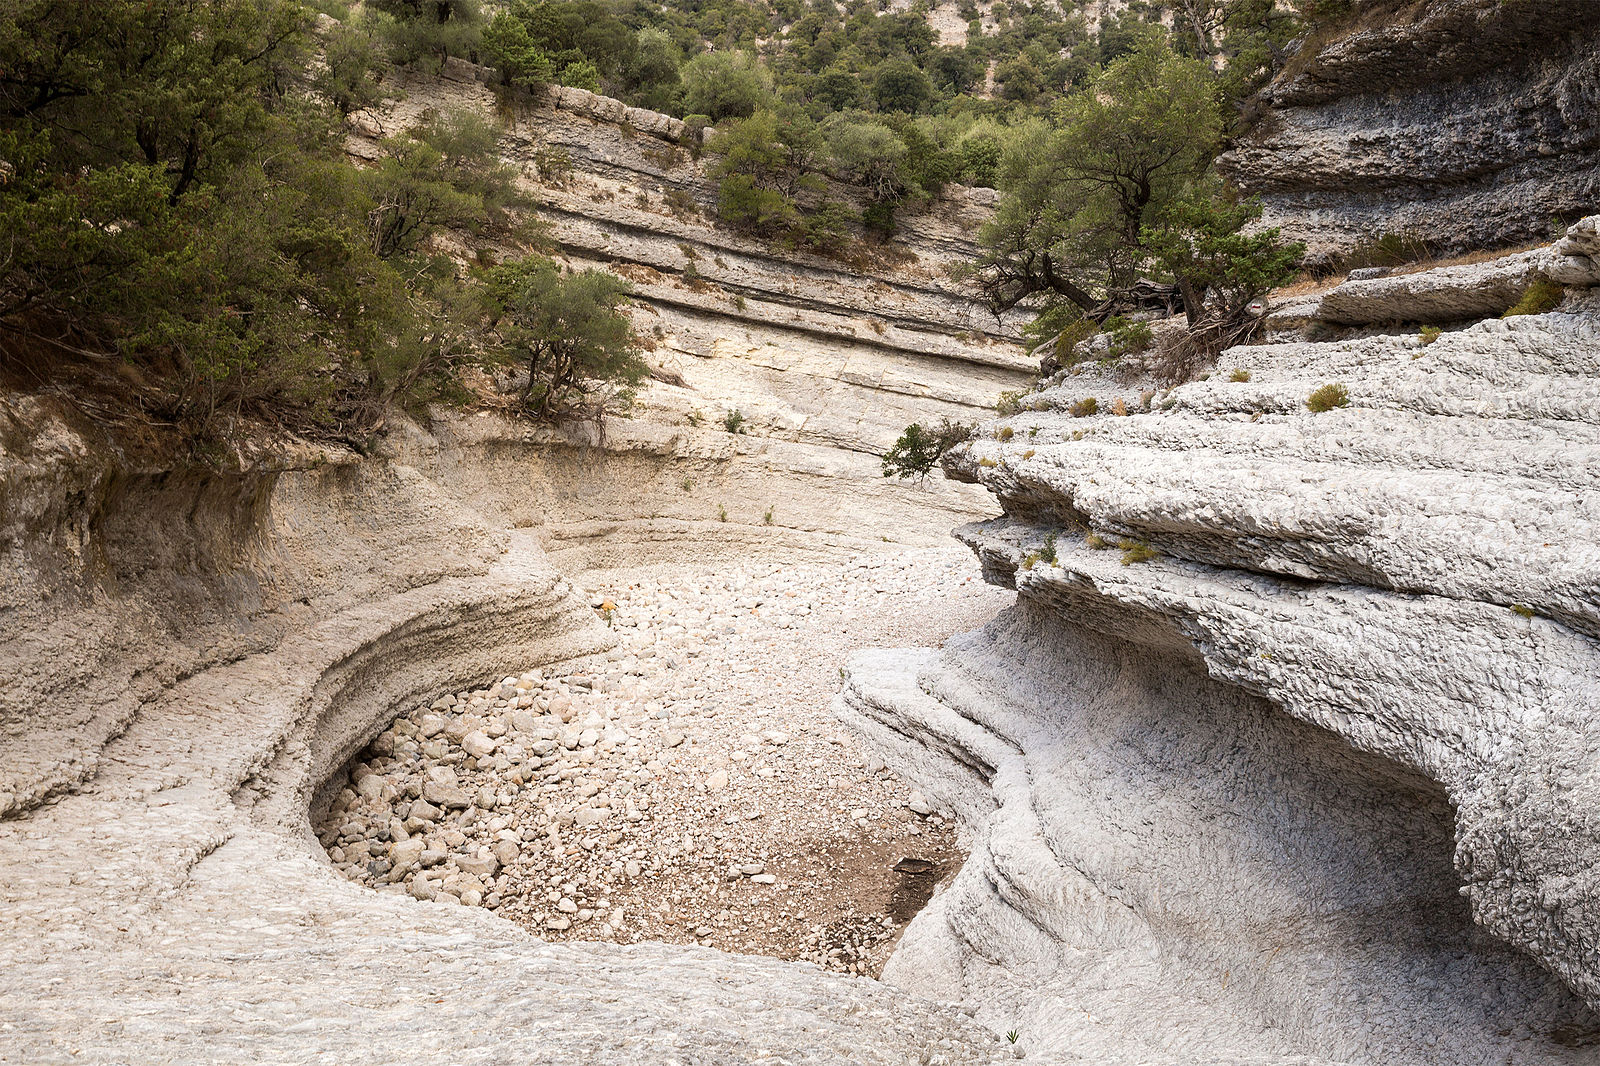 A view of the Gola di Gorropu Gorge in Sardinia